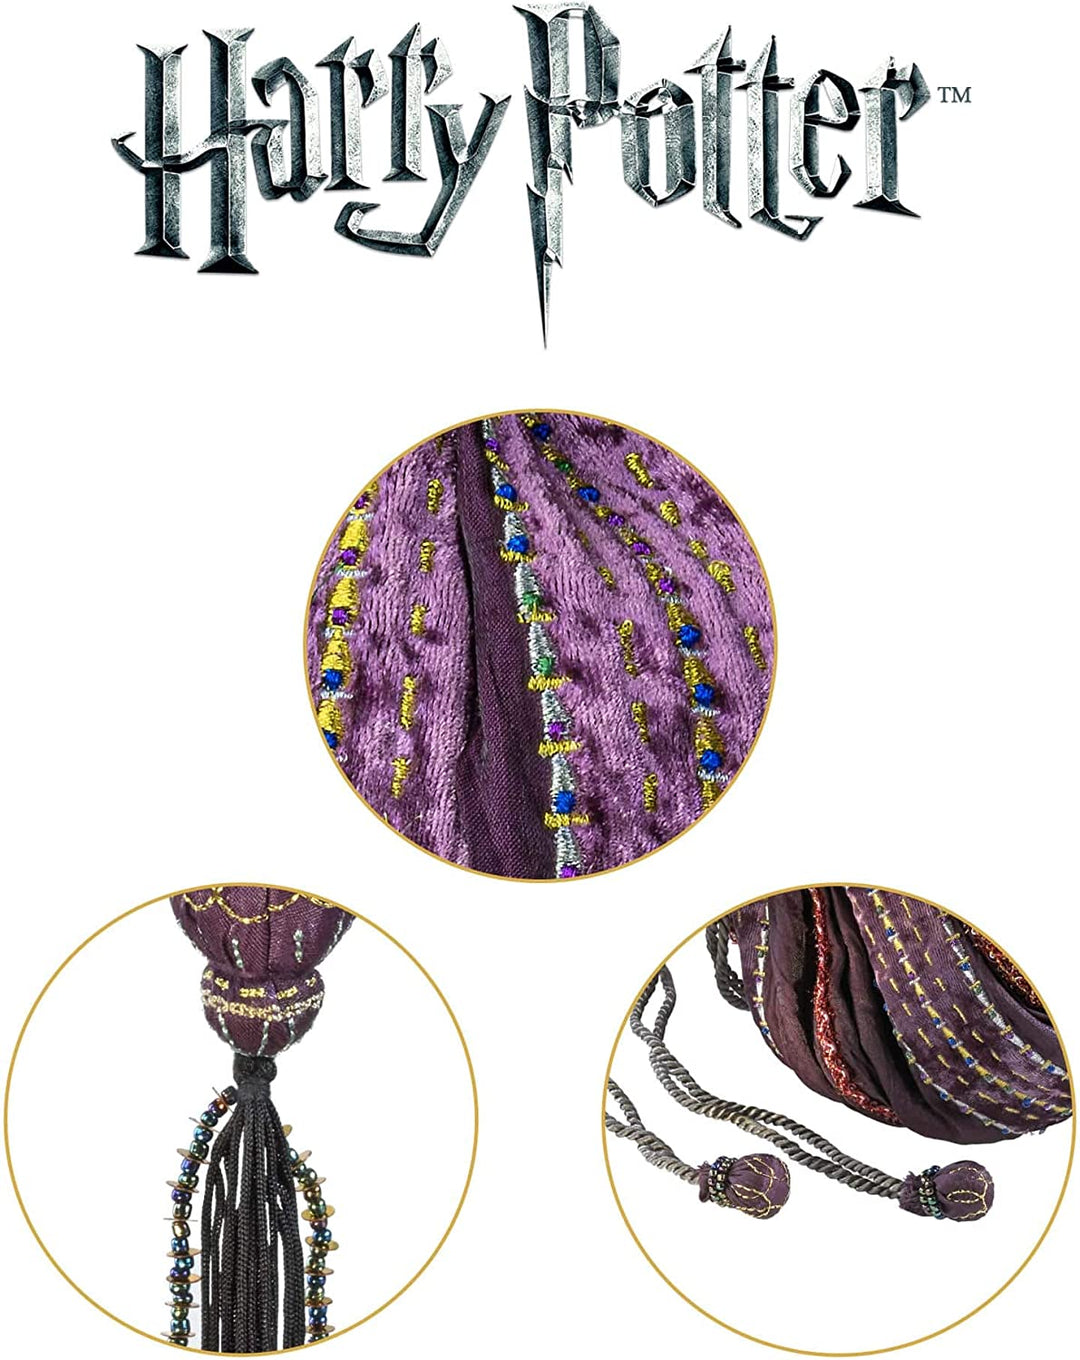 The Noble Collection Hermine Granger Tasche – 8 Zoll (20 cm) kleine lila Hermine Tasche – Offiziell lizenziertes Harry-Potter-Filmset-Filmspielzeug – Geschenke für Familie, Freunde und Harry-Potter-Fans